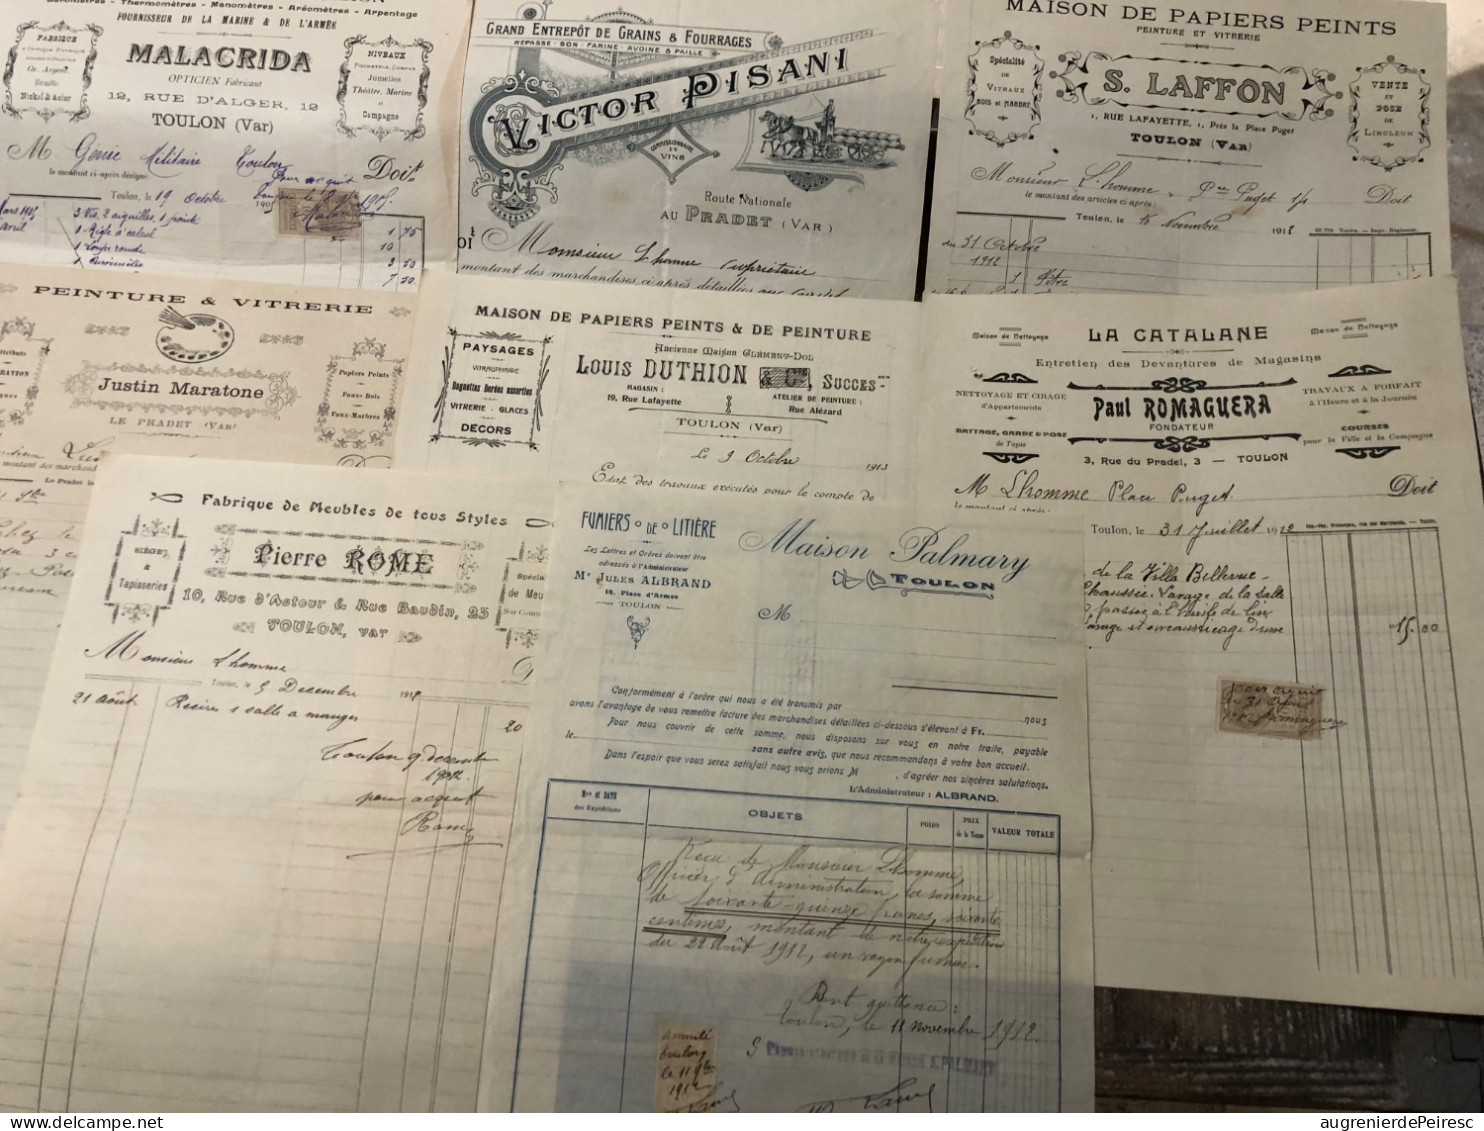 Lot de 80 factures pour MR L’homme, propriétaire et officier d’administration du génie 1899-1914 Toulon (83)